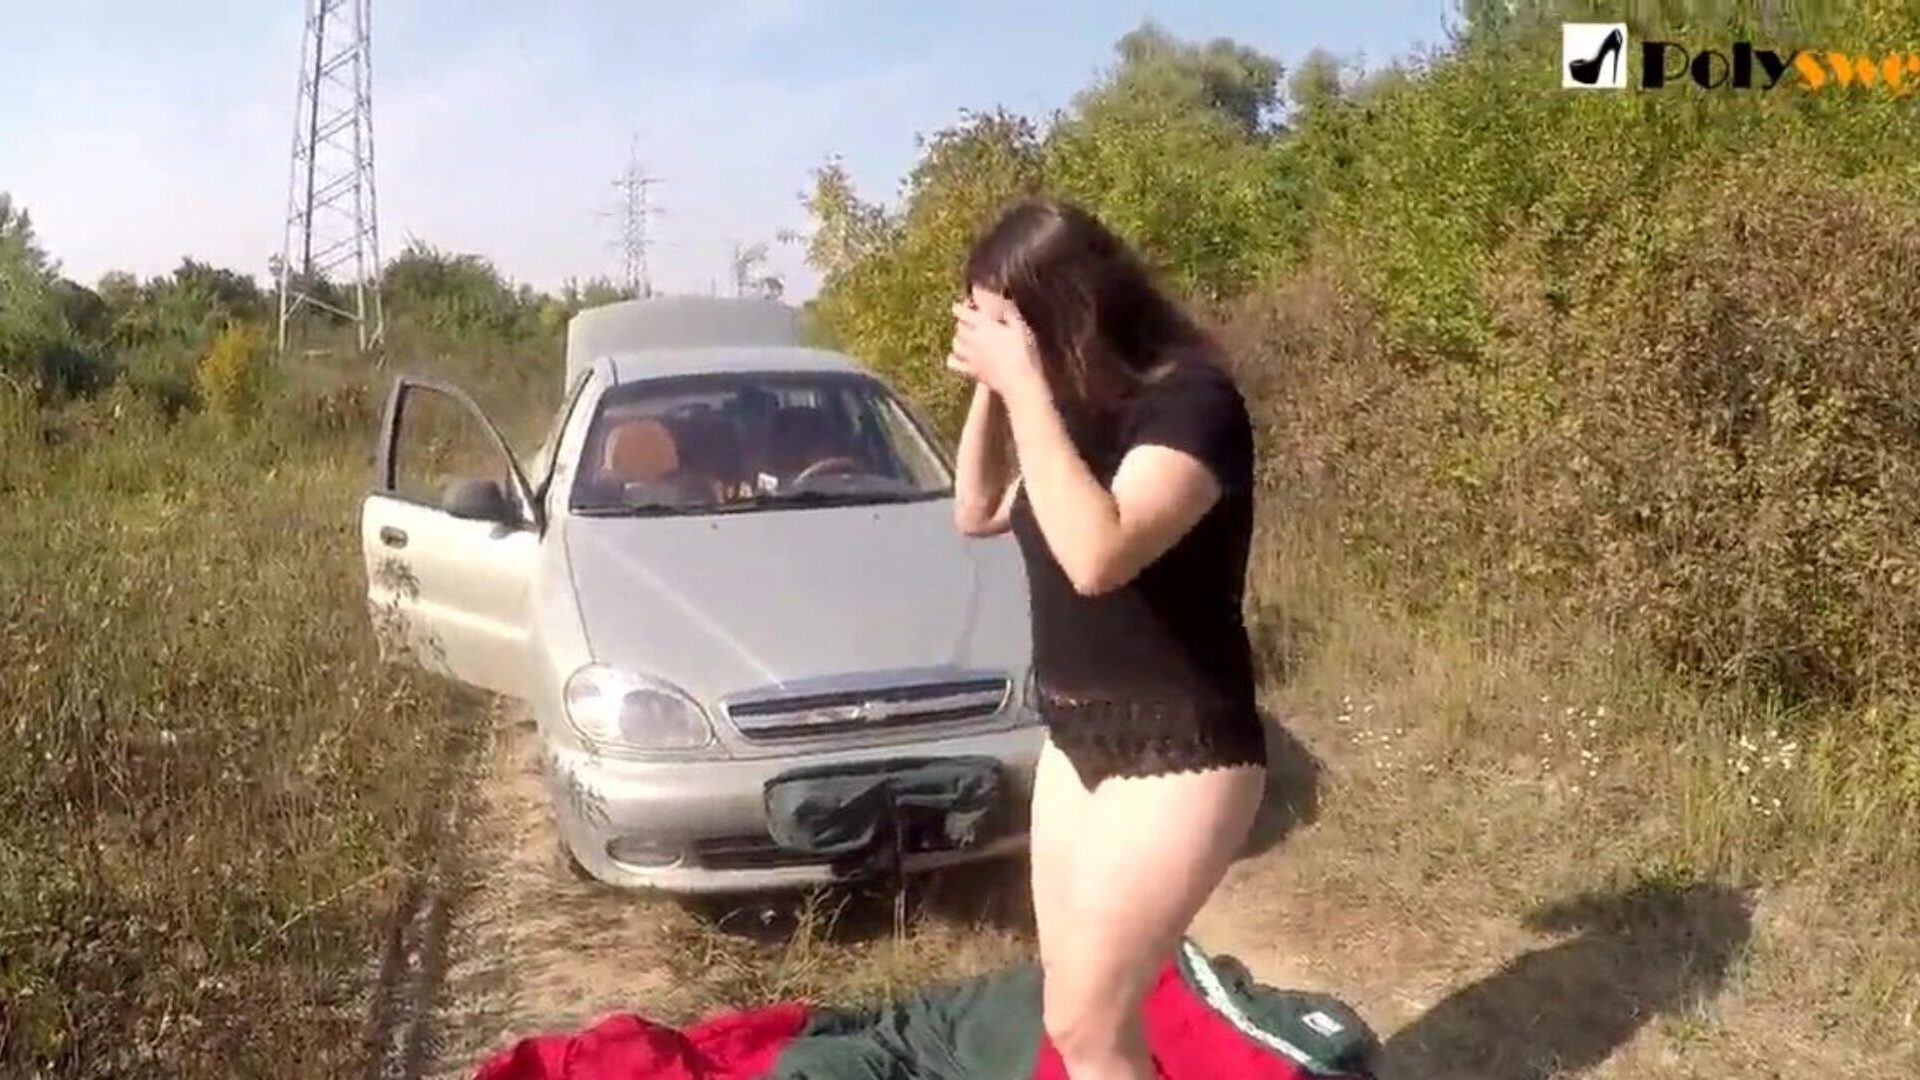 offentlig onani pige jeg blev fanget af en bil i begyndelsen af ​​videoen)